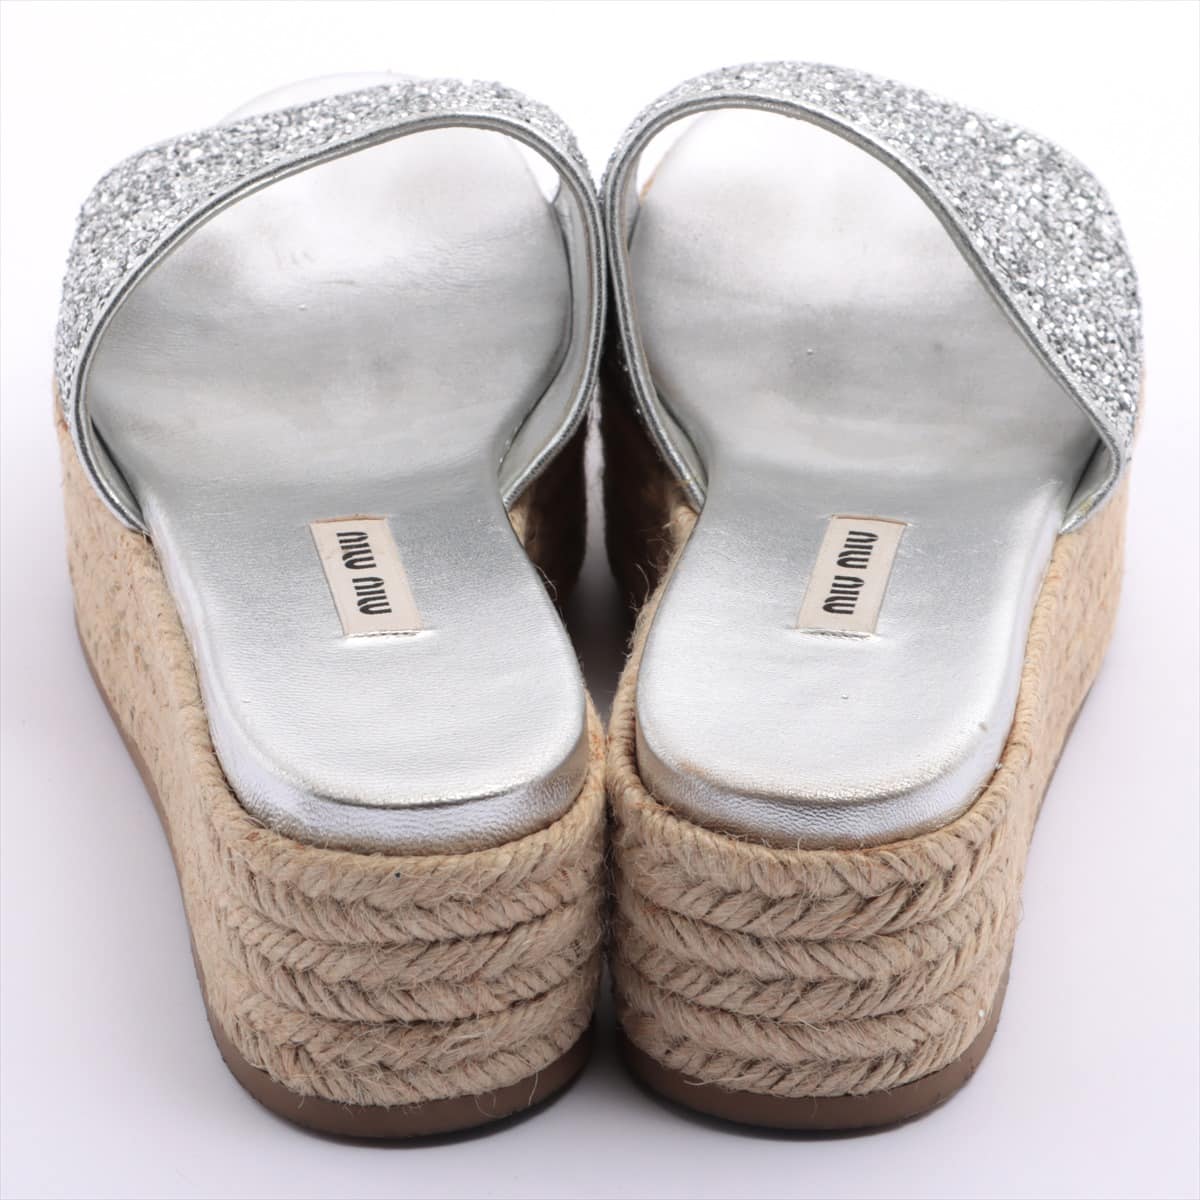 Miu Miu Glitter Sandals 39 Ladies' Silver